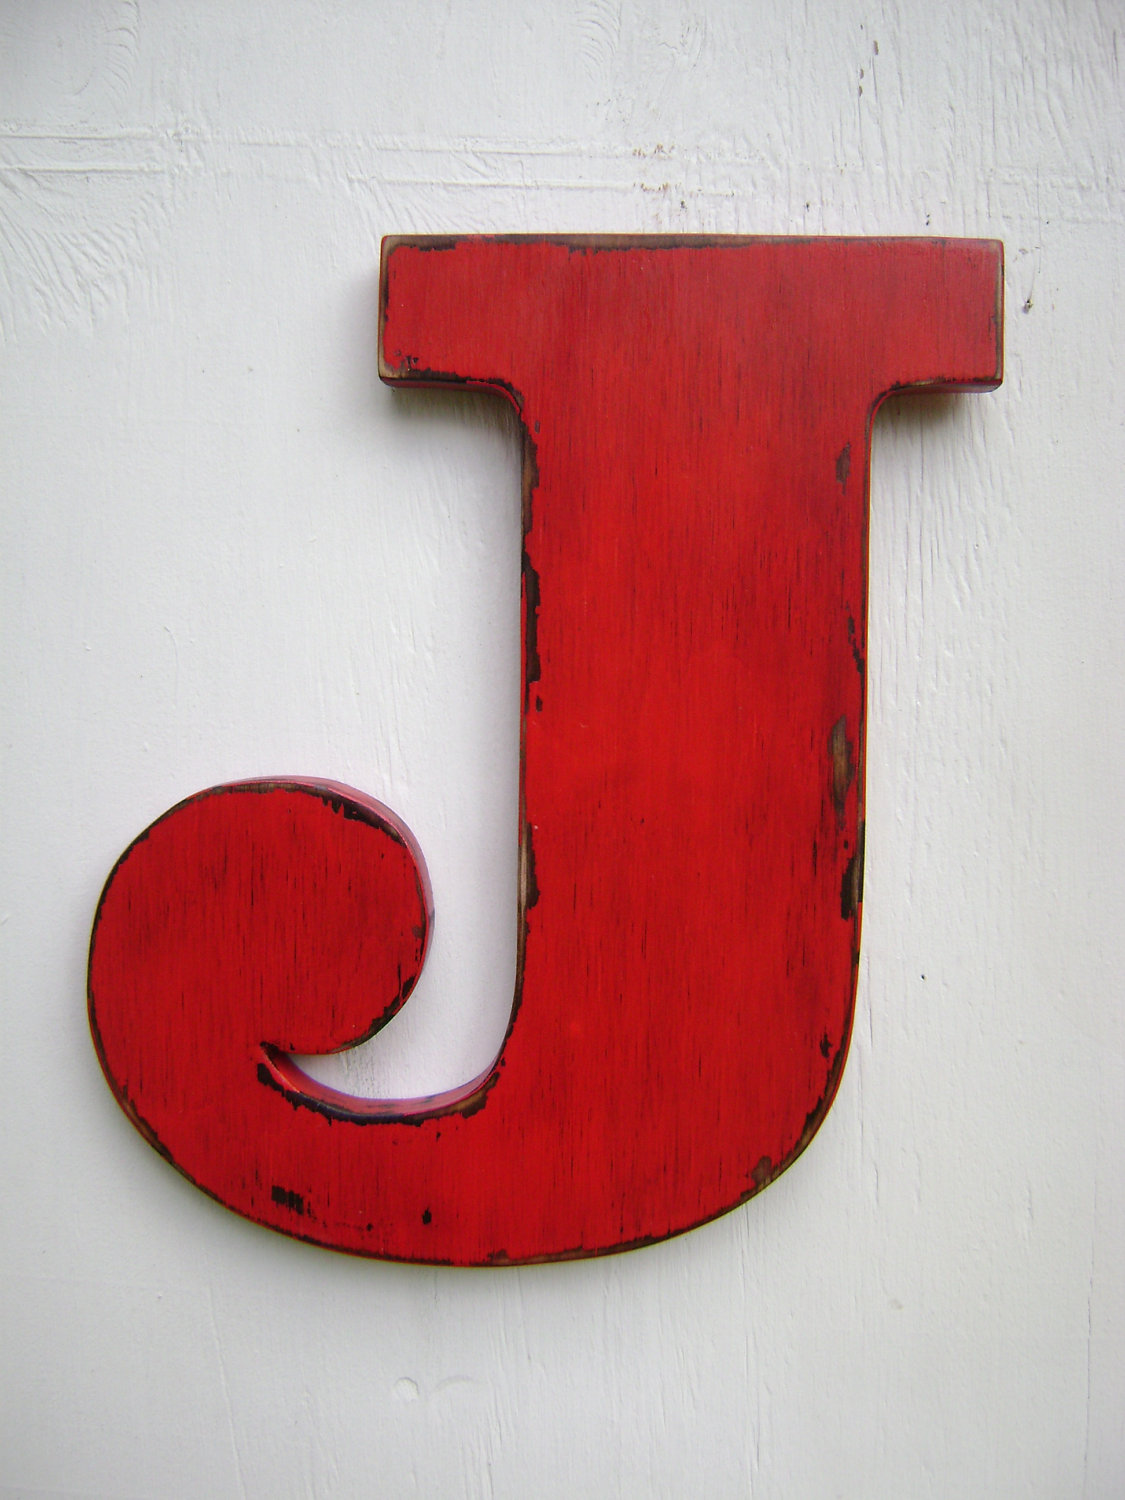 Popular items for letter j 